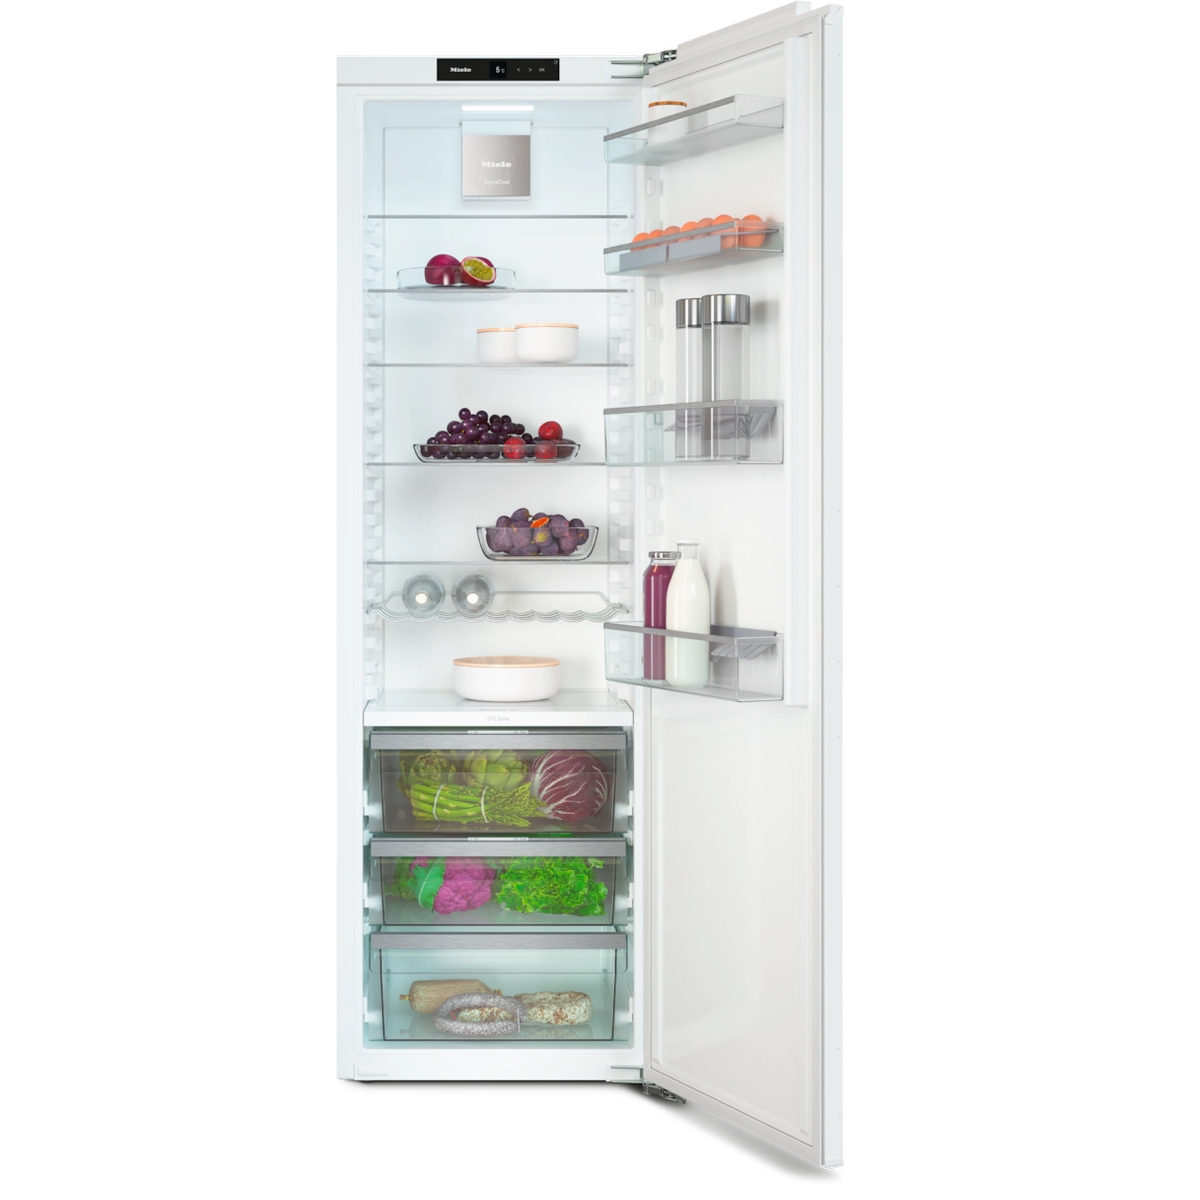 Встраиваемый холодильник Miele K 7743 E белый встраиваемый холодильник miele k 7743 e белый